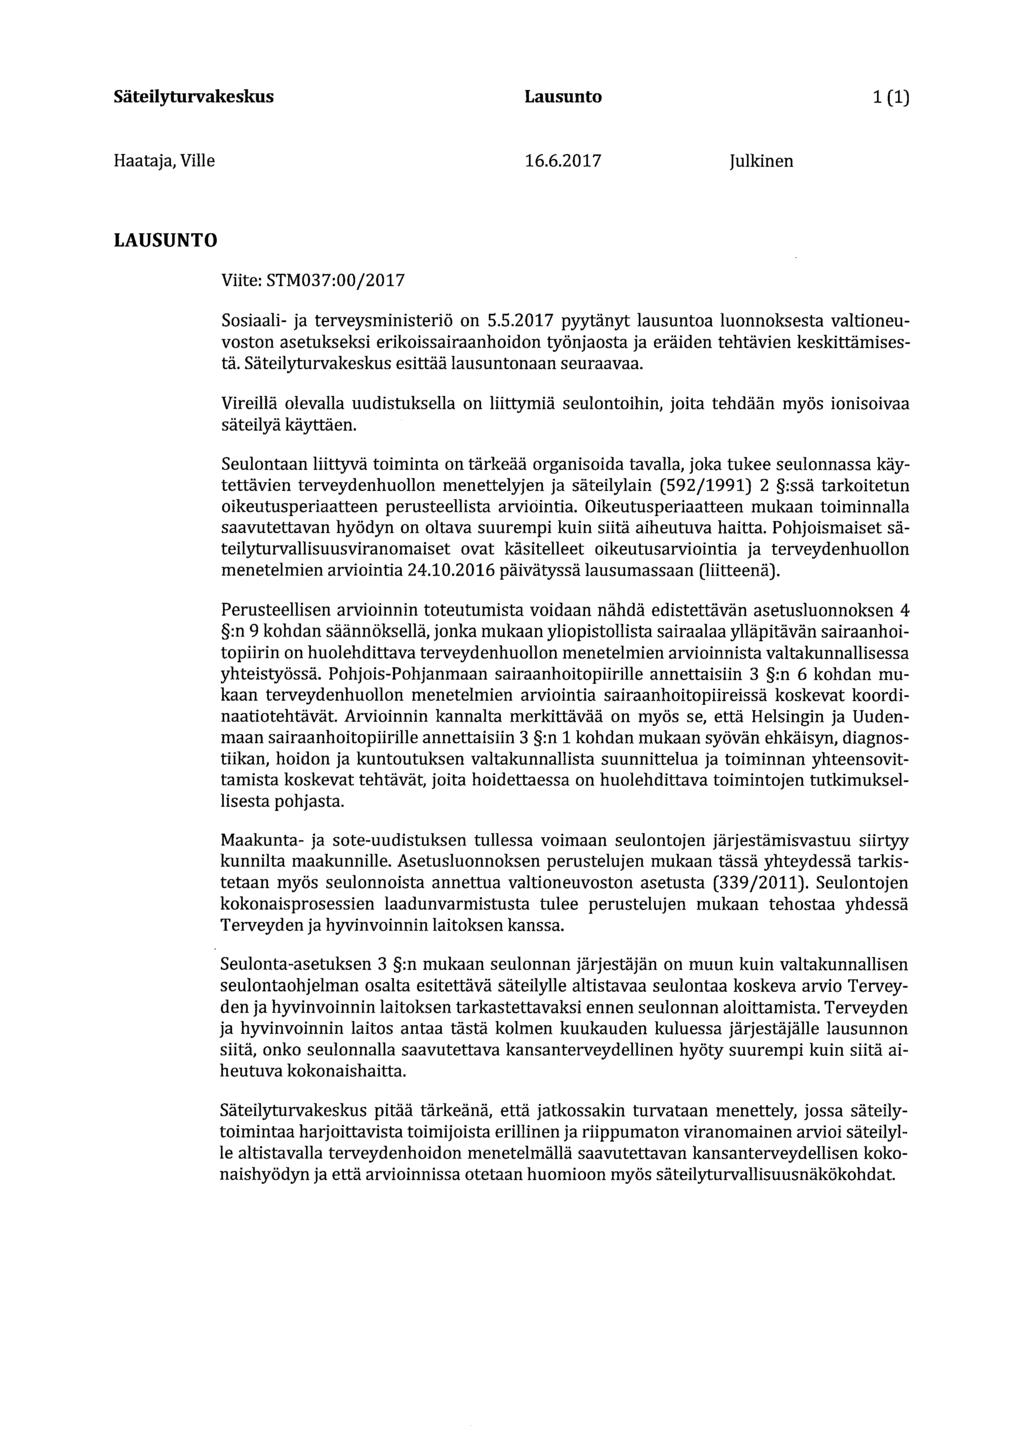 Säteilyturvakeskus Lausunto 1(1) Haataja, Ville 16.6.2017 Julkinen LAUSUNTO Viite: STM037:00/2017 Sosiaali- ja terveysministeriö on 5.